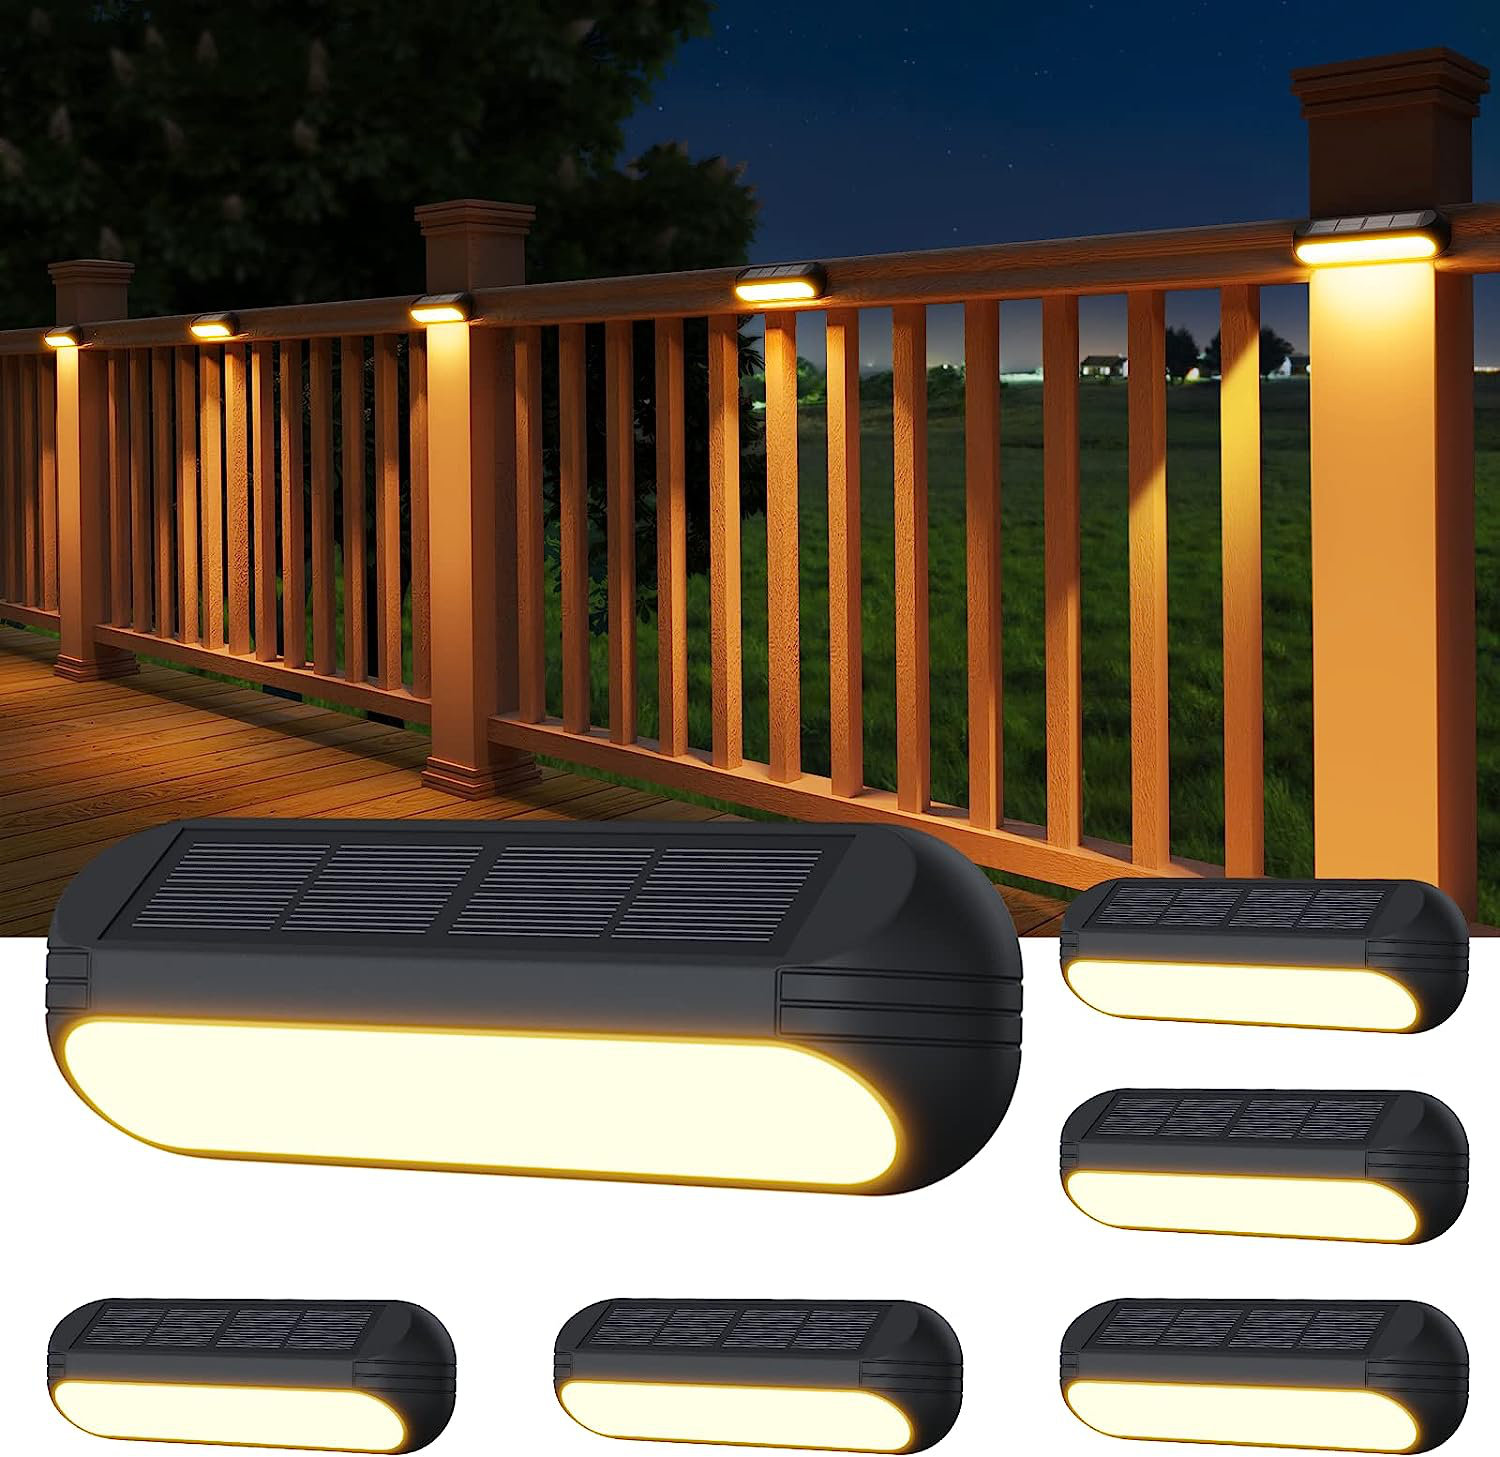 TFTEK Solar Fence Lights Outdoor, Waterproof Deck Pathway Yard Lamp, Stainless Steel,6 Pack,Black Metal case - 3